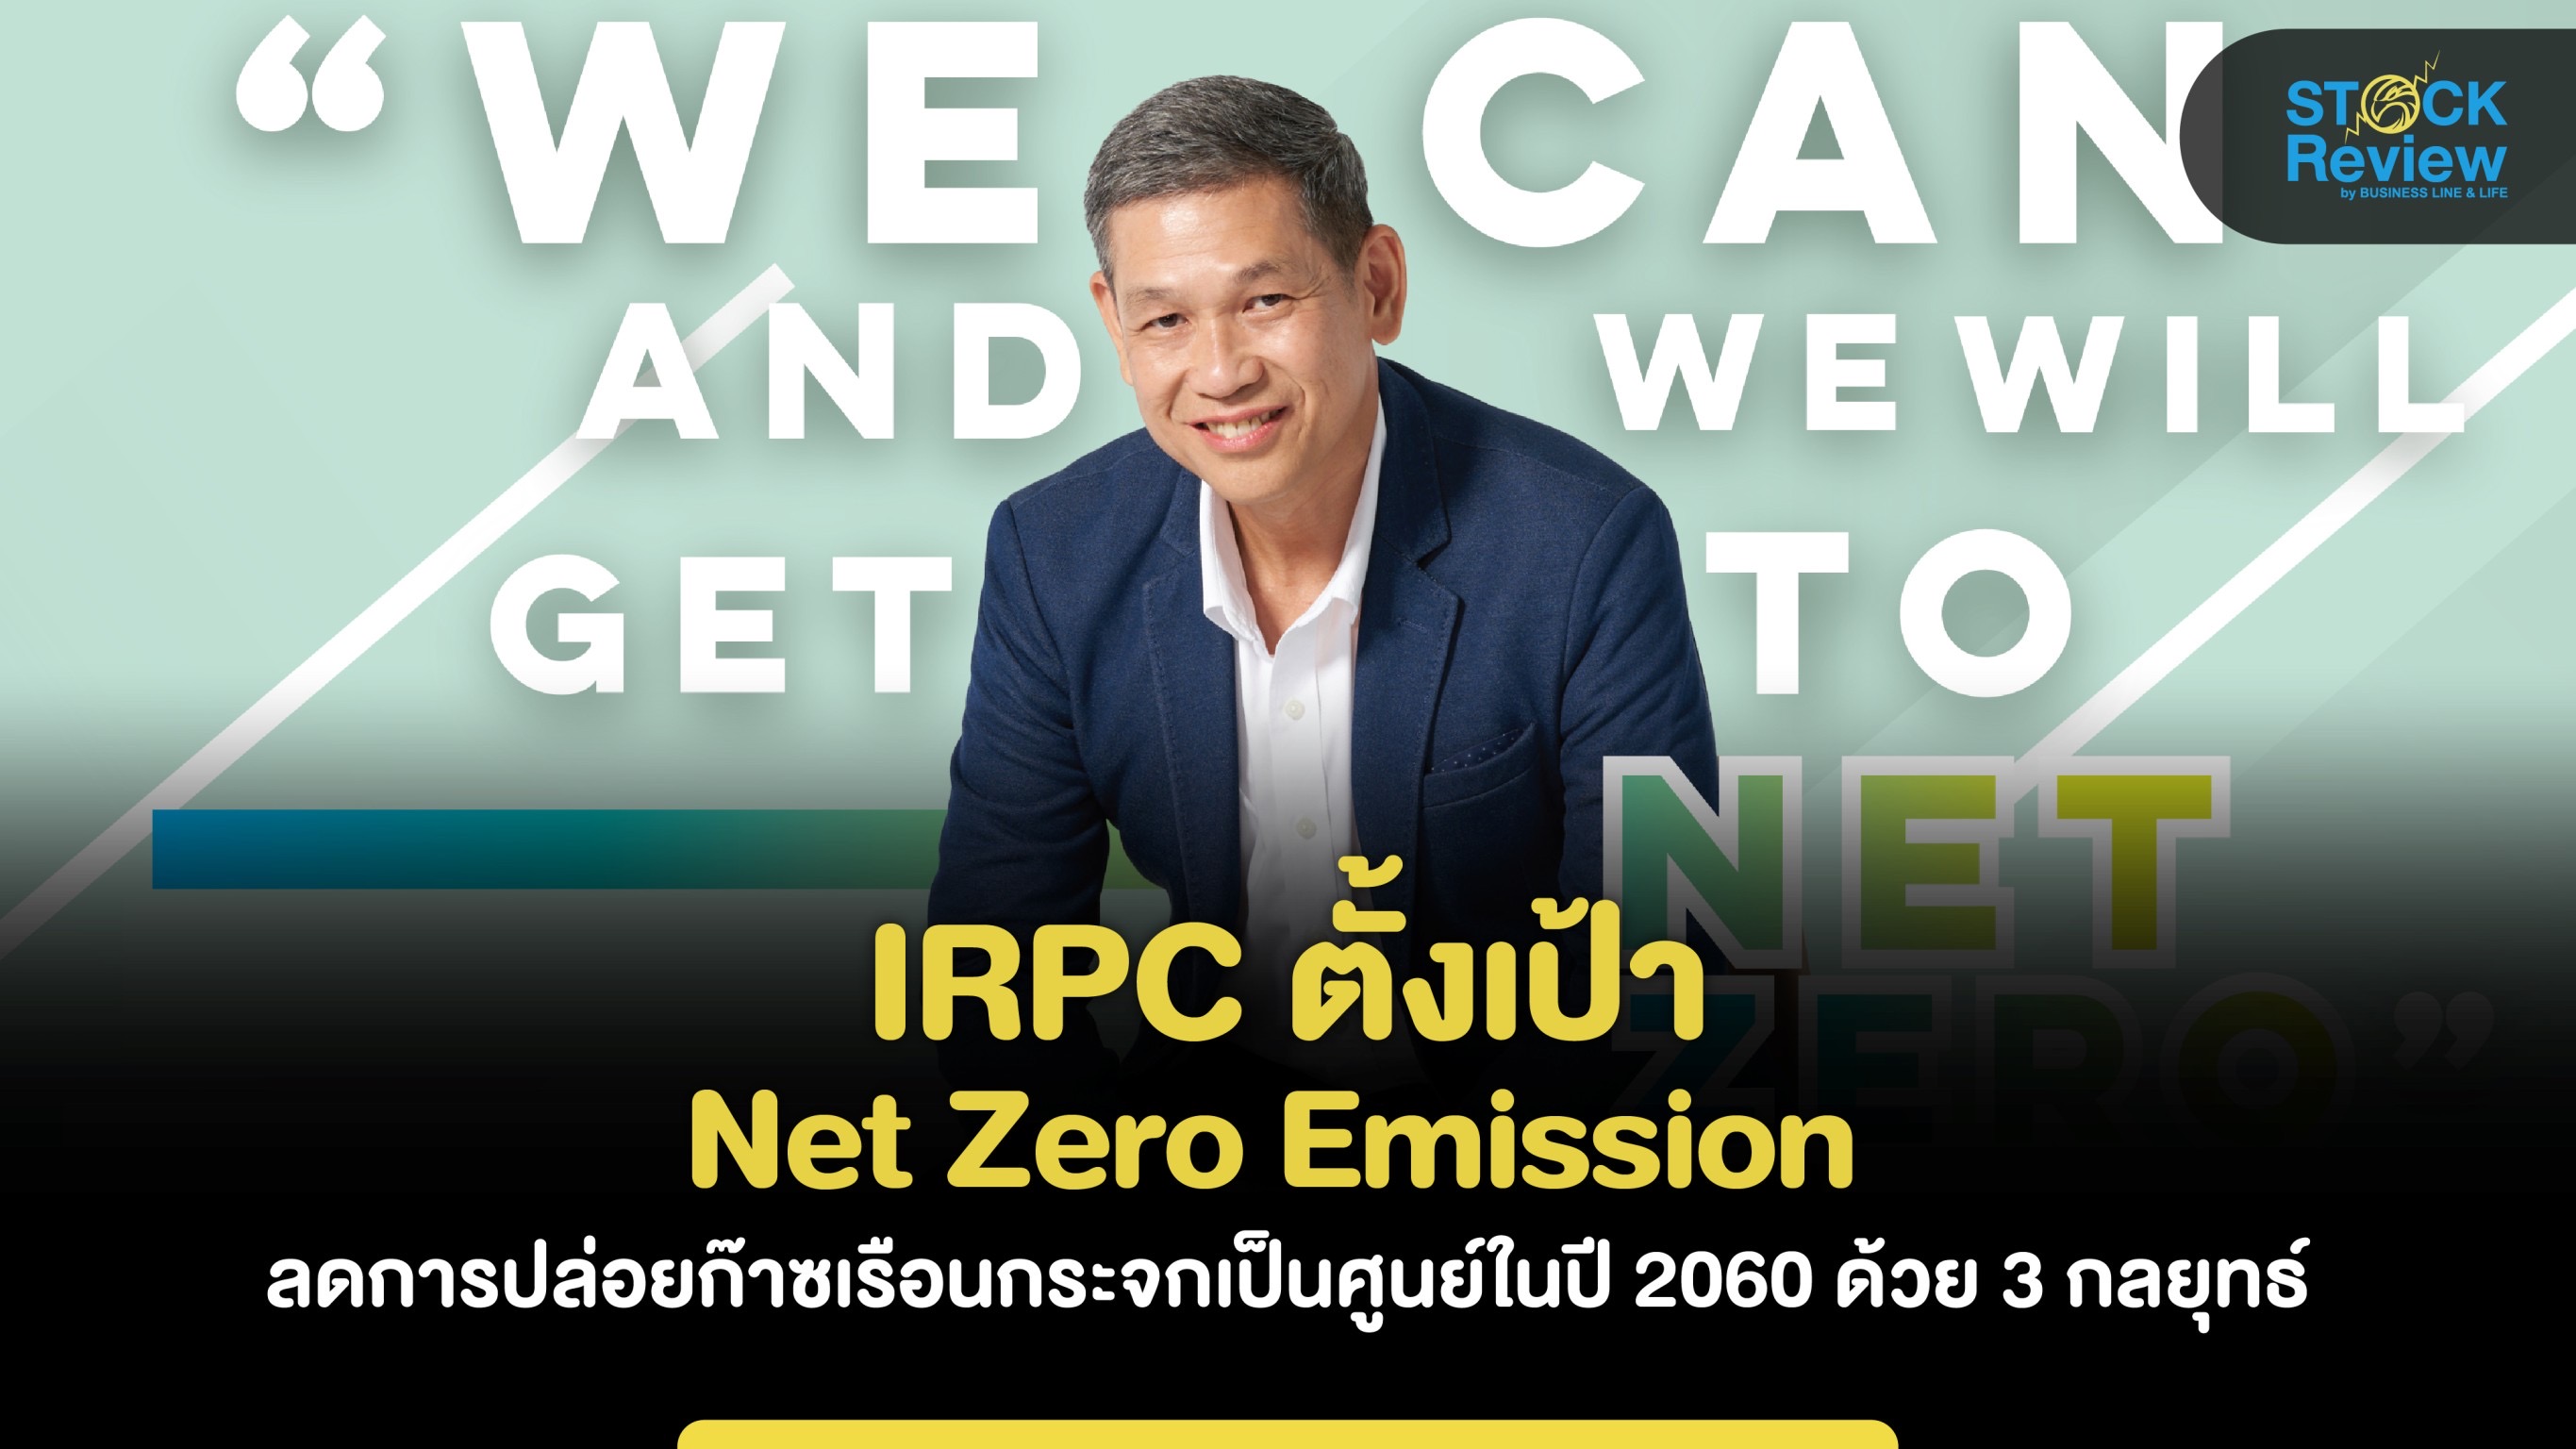 IRPC ตั้งเป้า Net Zero Emission ลดการปล่อยก๊าซเรือนกระจกเป็นศูนย์ในปี 2060 ด้วย 3 กลยุทธ์